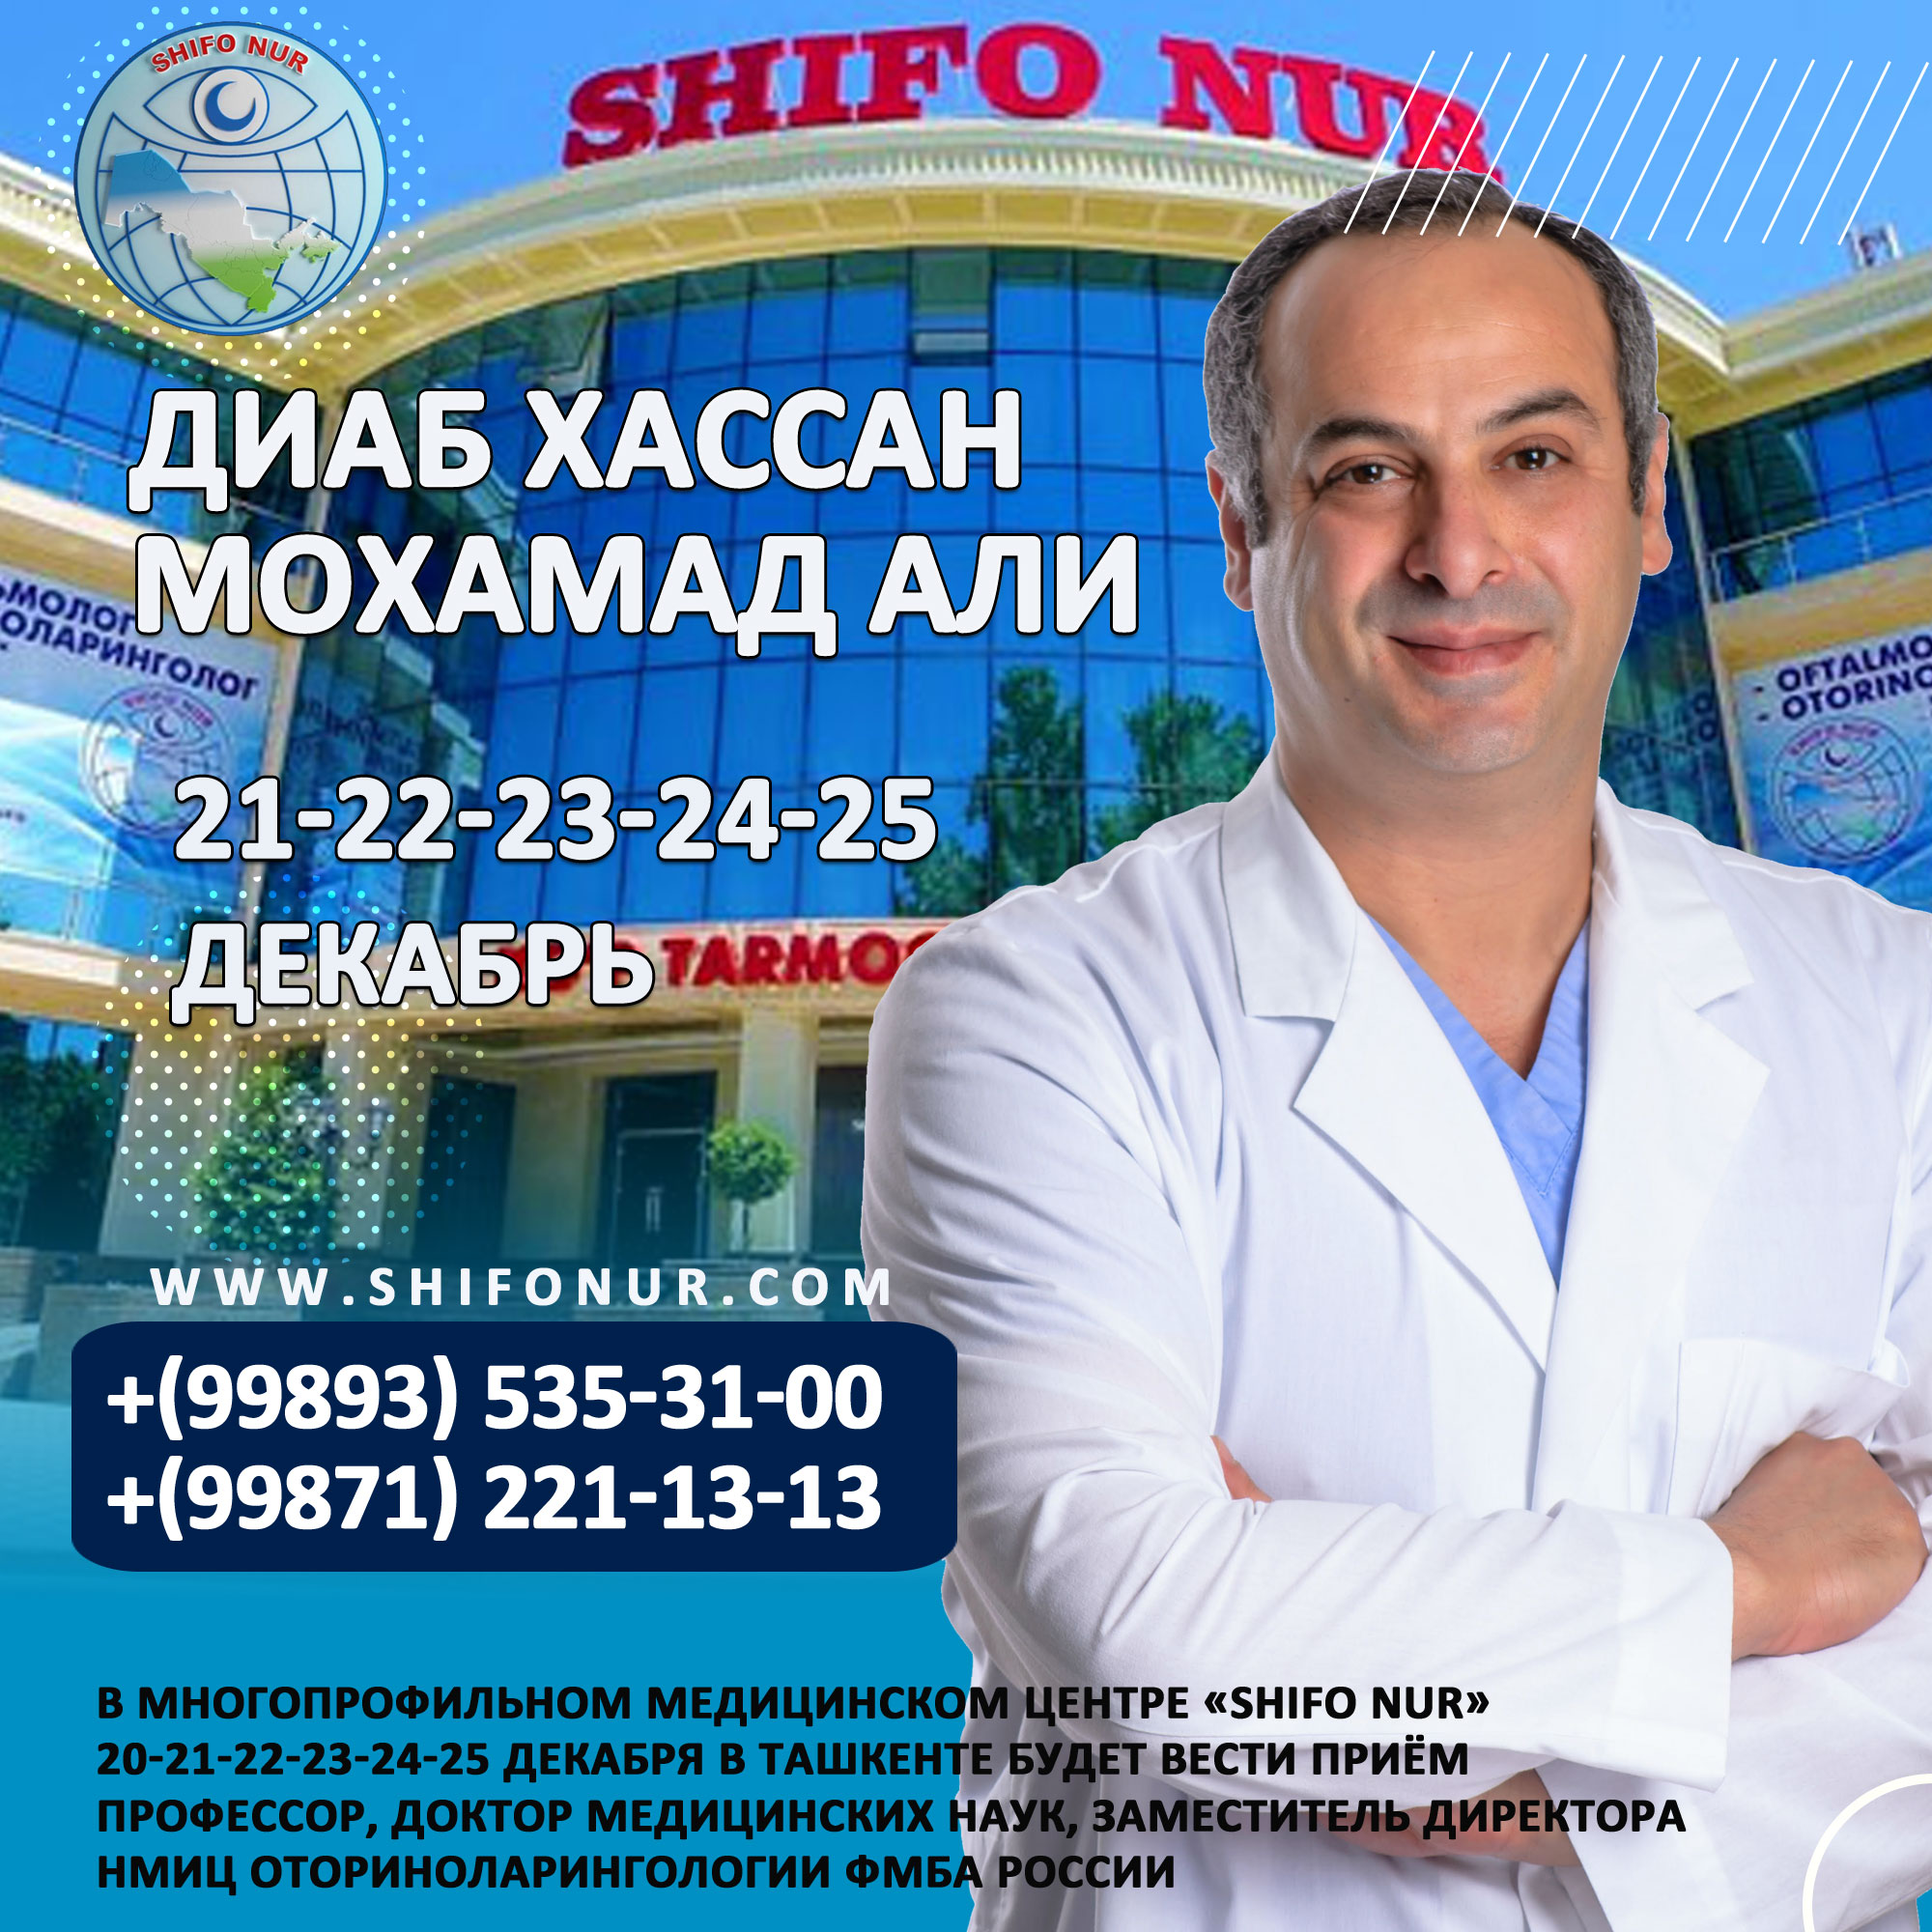 20-21-22-23-24-25 декабря в Ташкенте будет вести приём профессор, доктор медицинских наук Диаб Хассан Мохамад Али.